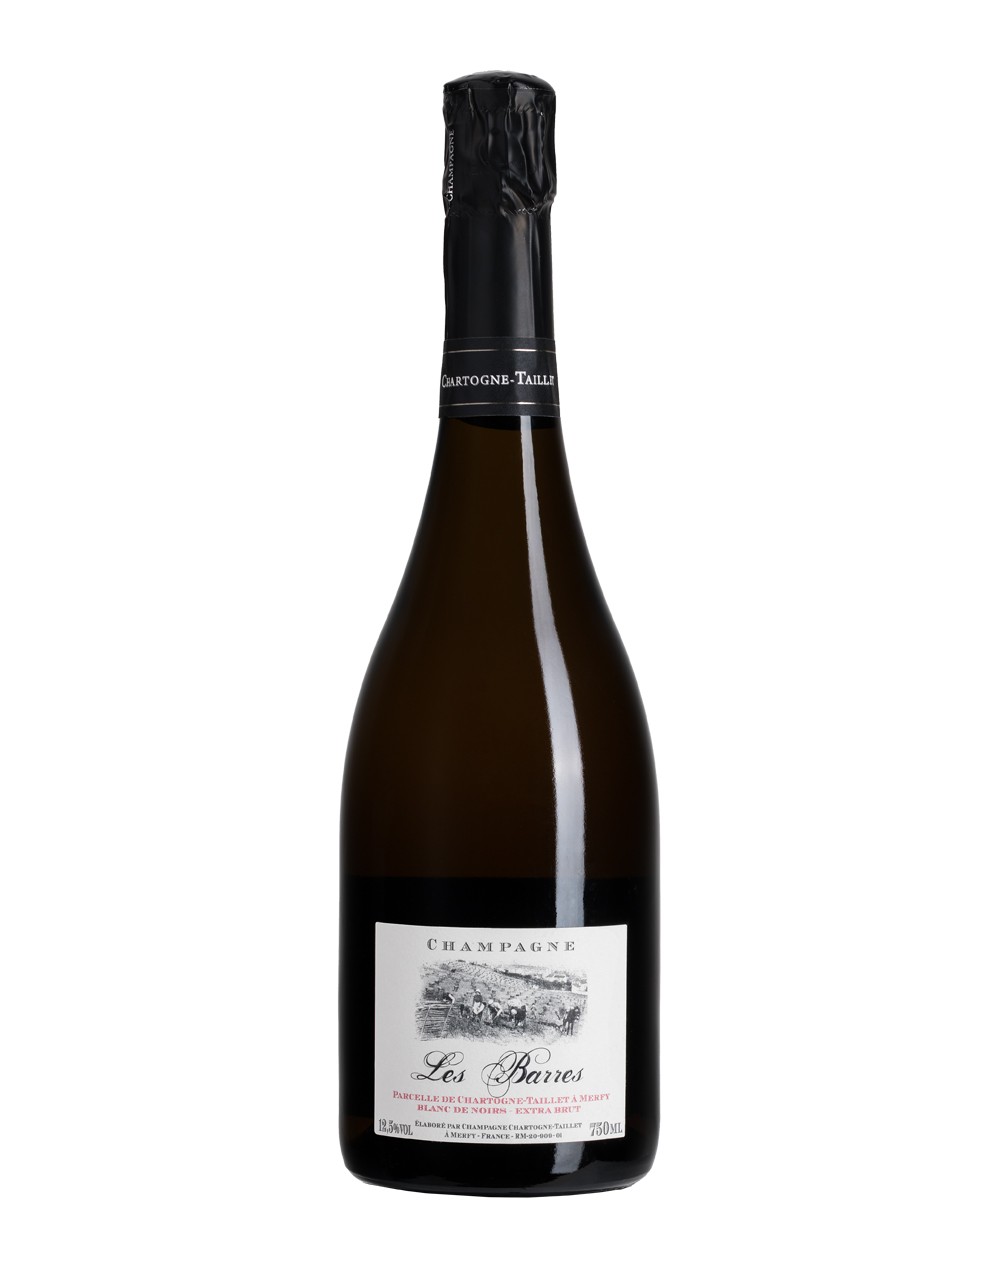 CHÂTEAU CHARTOGNE-TAILLET - Champagne AOC - Extra Brut Blanc de Noirs 